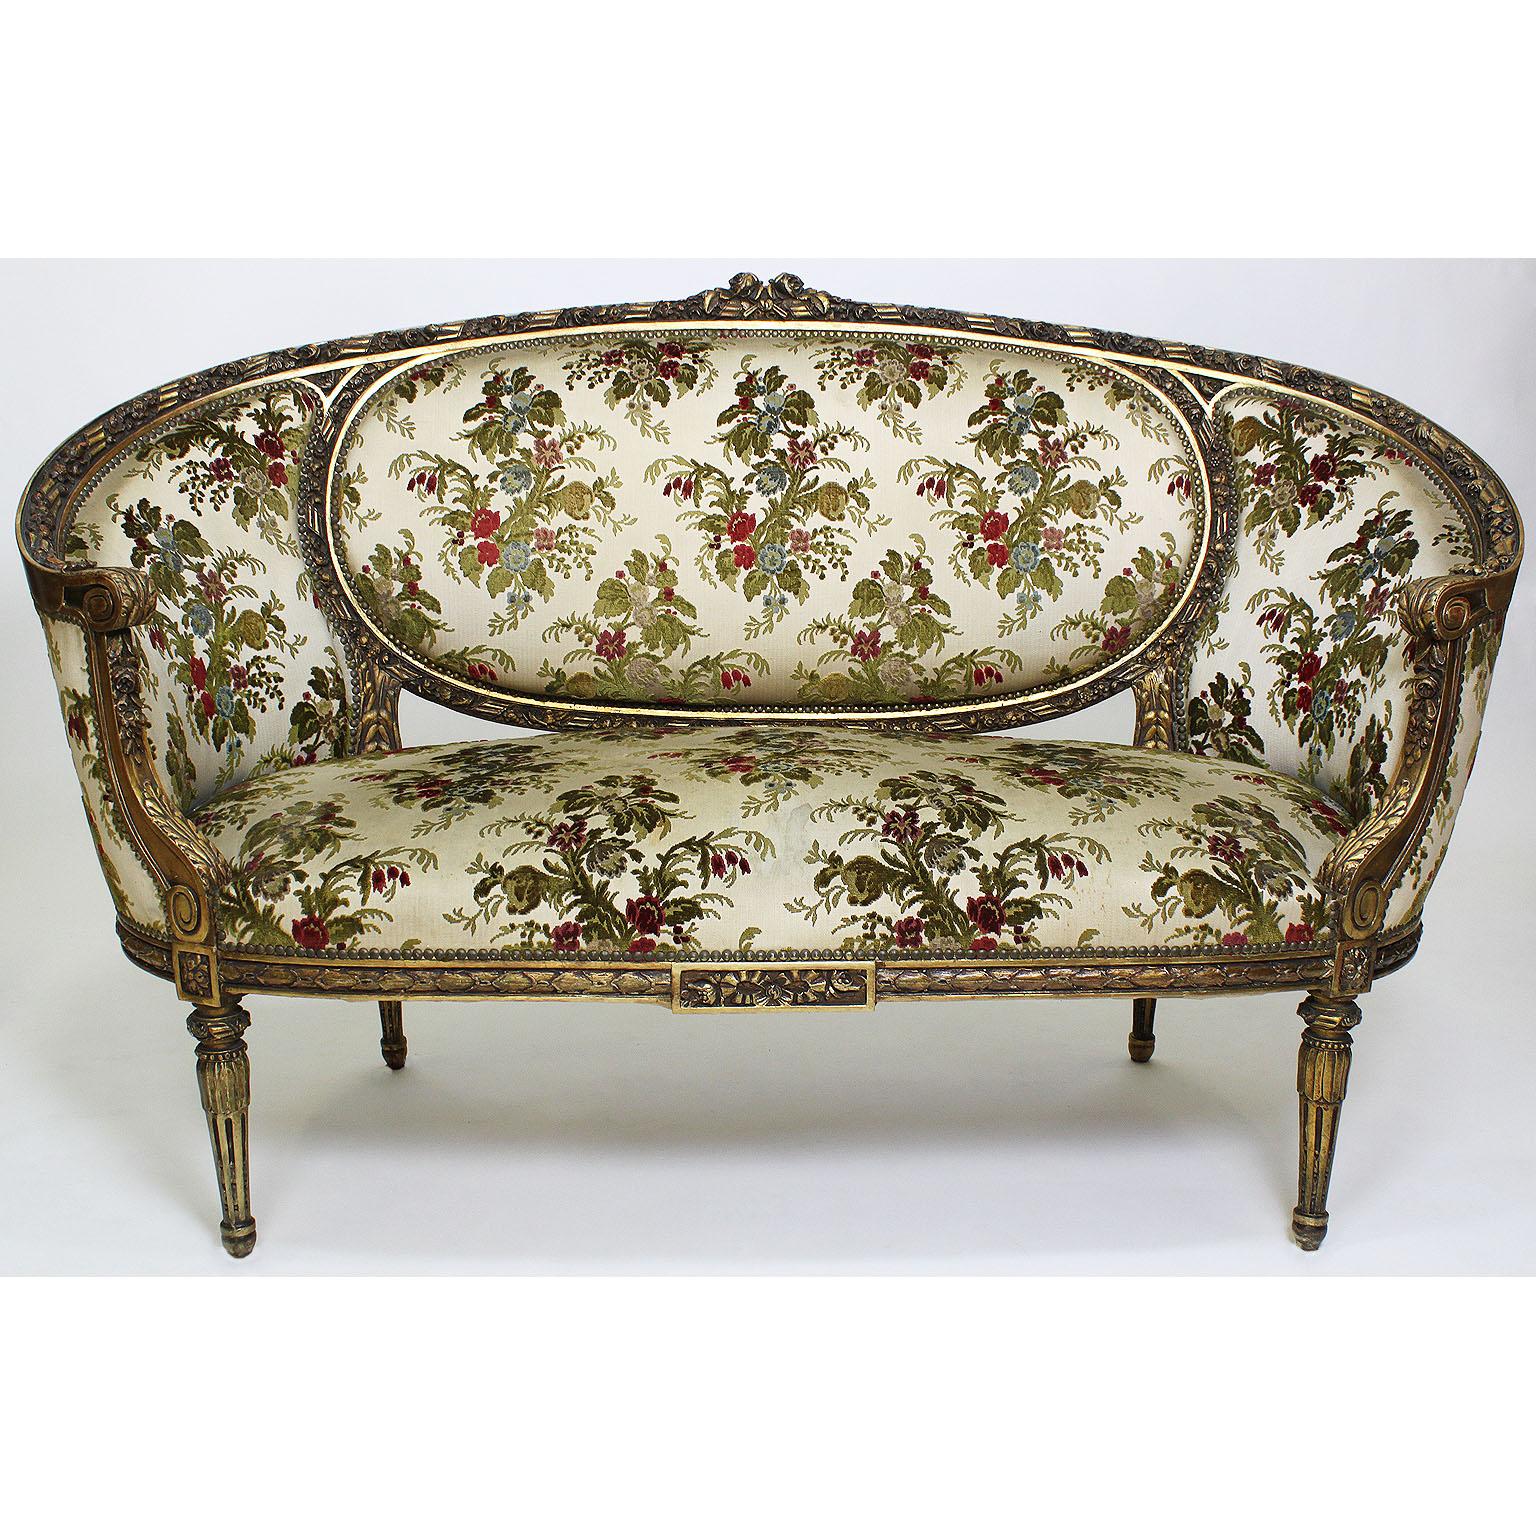 Französisch 19. bis 20. Jahrhundert Louis XVI-Stil vergoldet geschnitzt dreiteiligen Salon Suite Frames. Die kunstvoll geschnitzte Garnitur besteht aus einem Sofa und einem Paar Fauteuils a la Reine (Sesseln). Das Sofa mit floralen Schnitzereien und